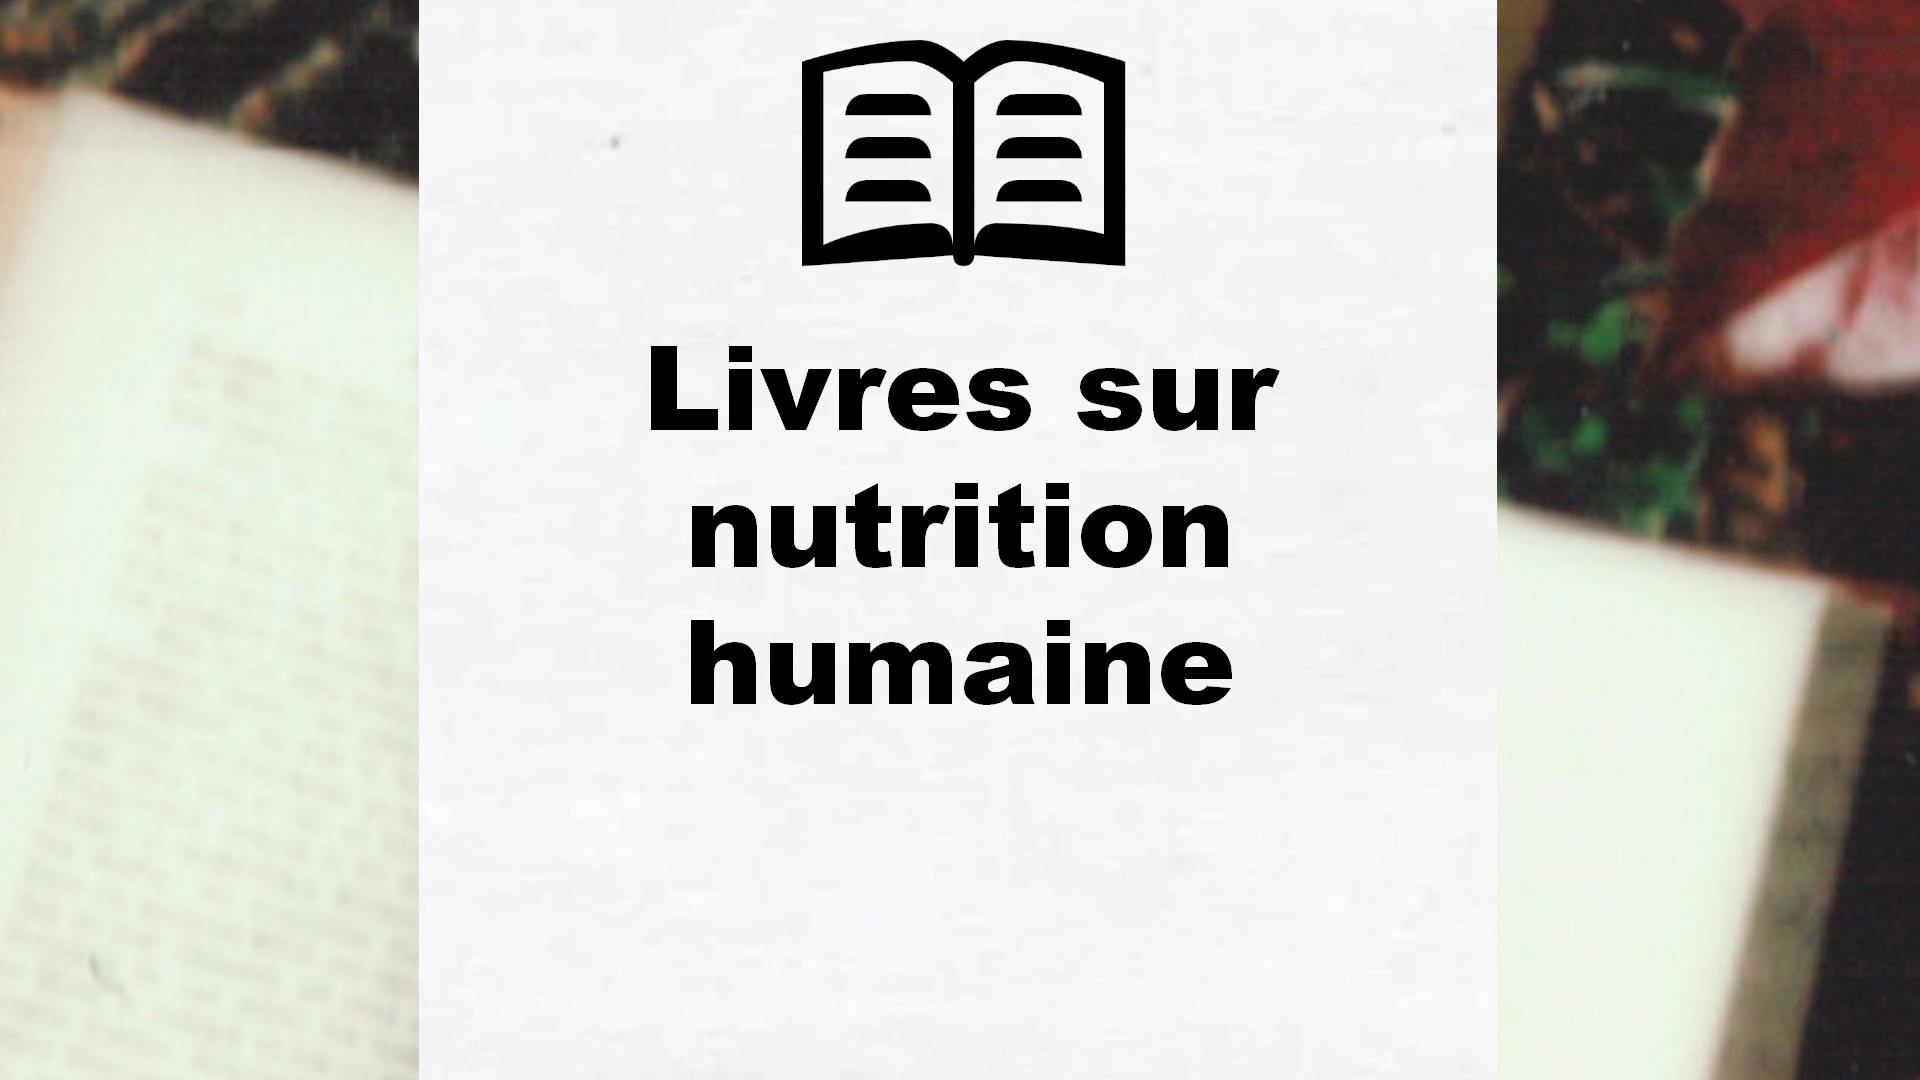 Livres sur nutrition humaine